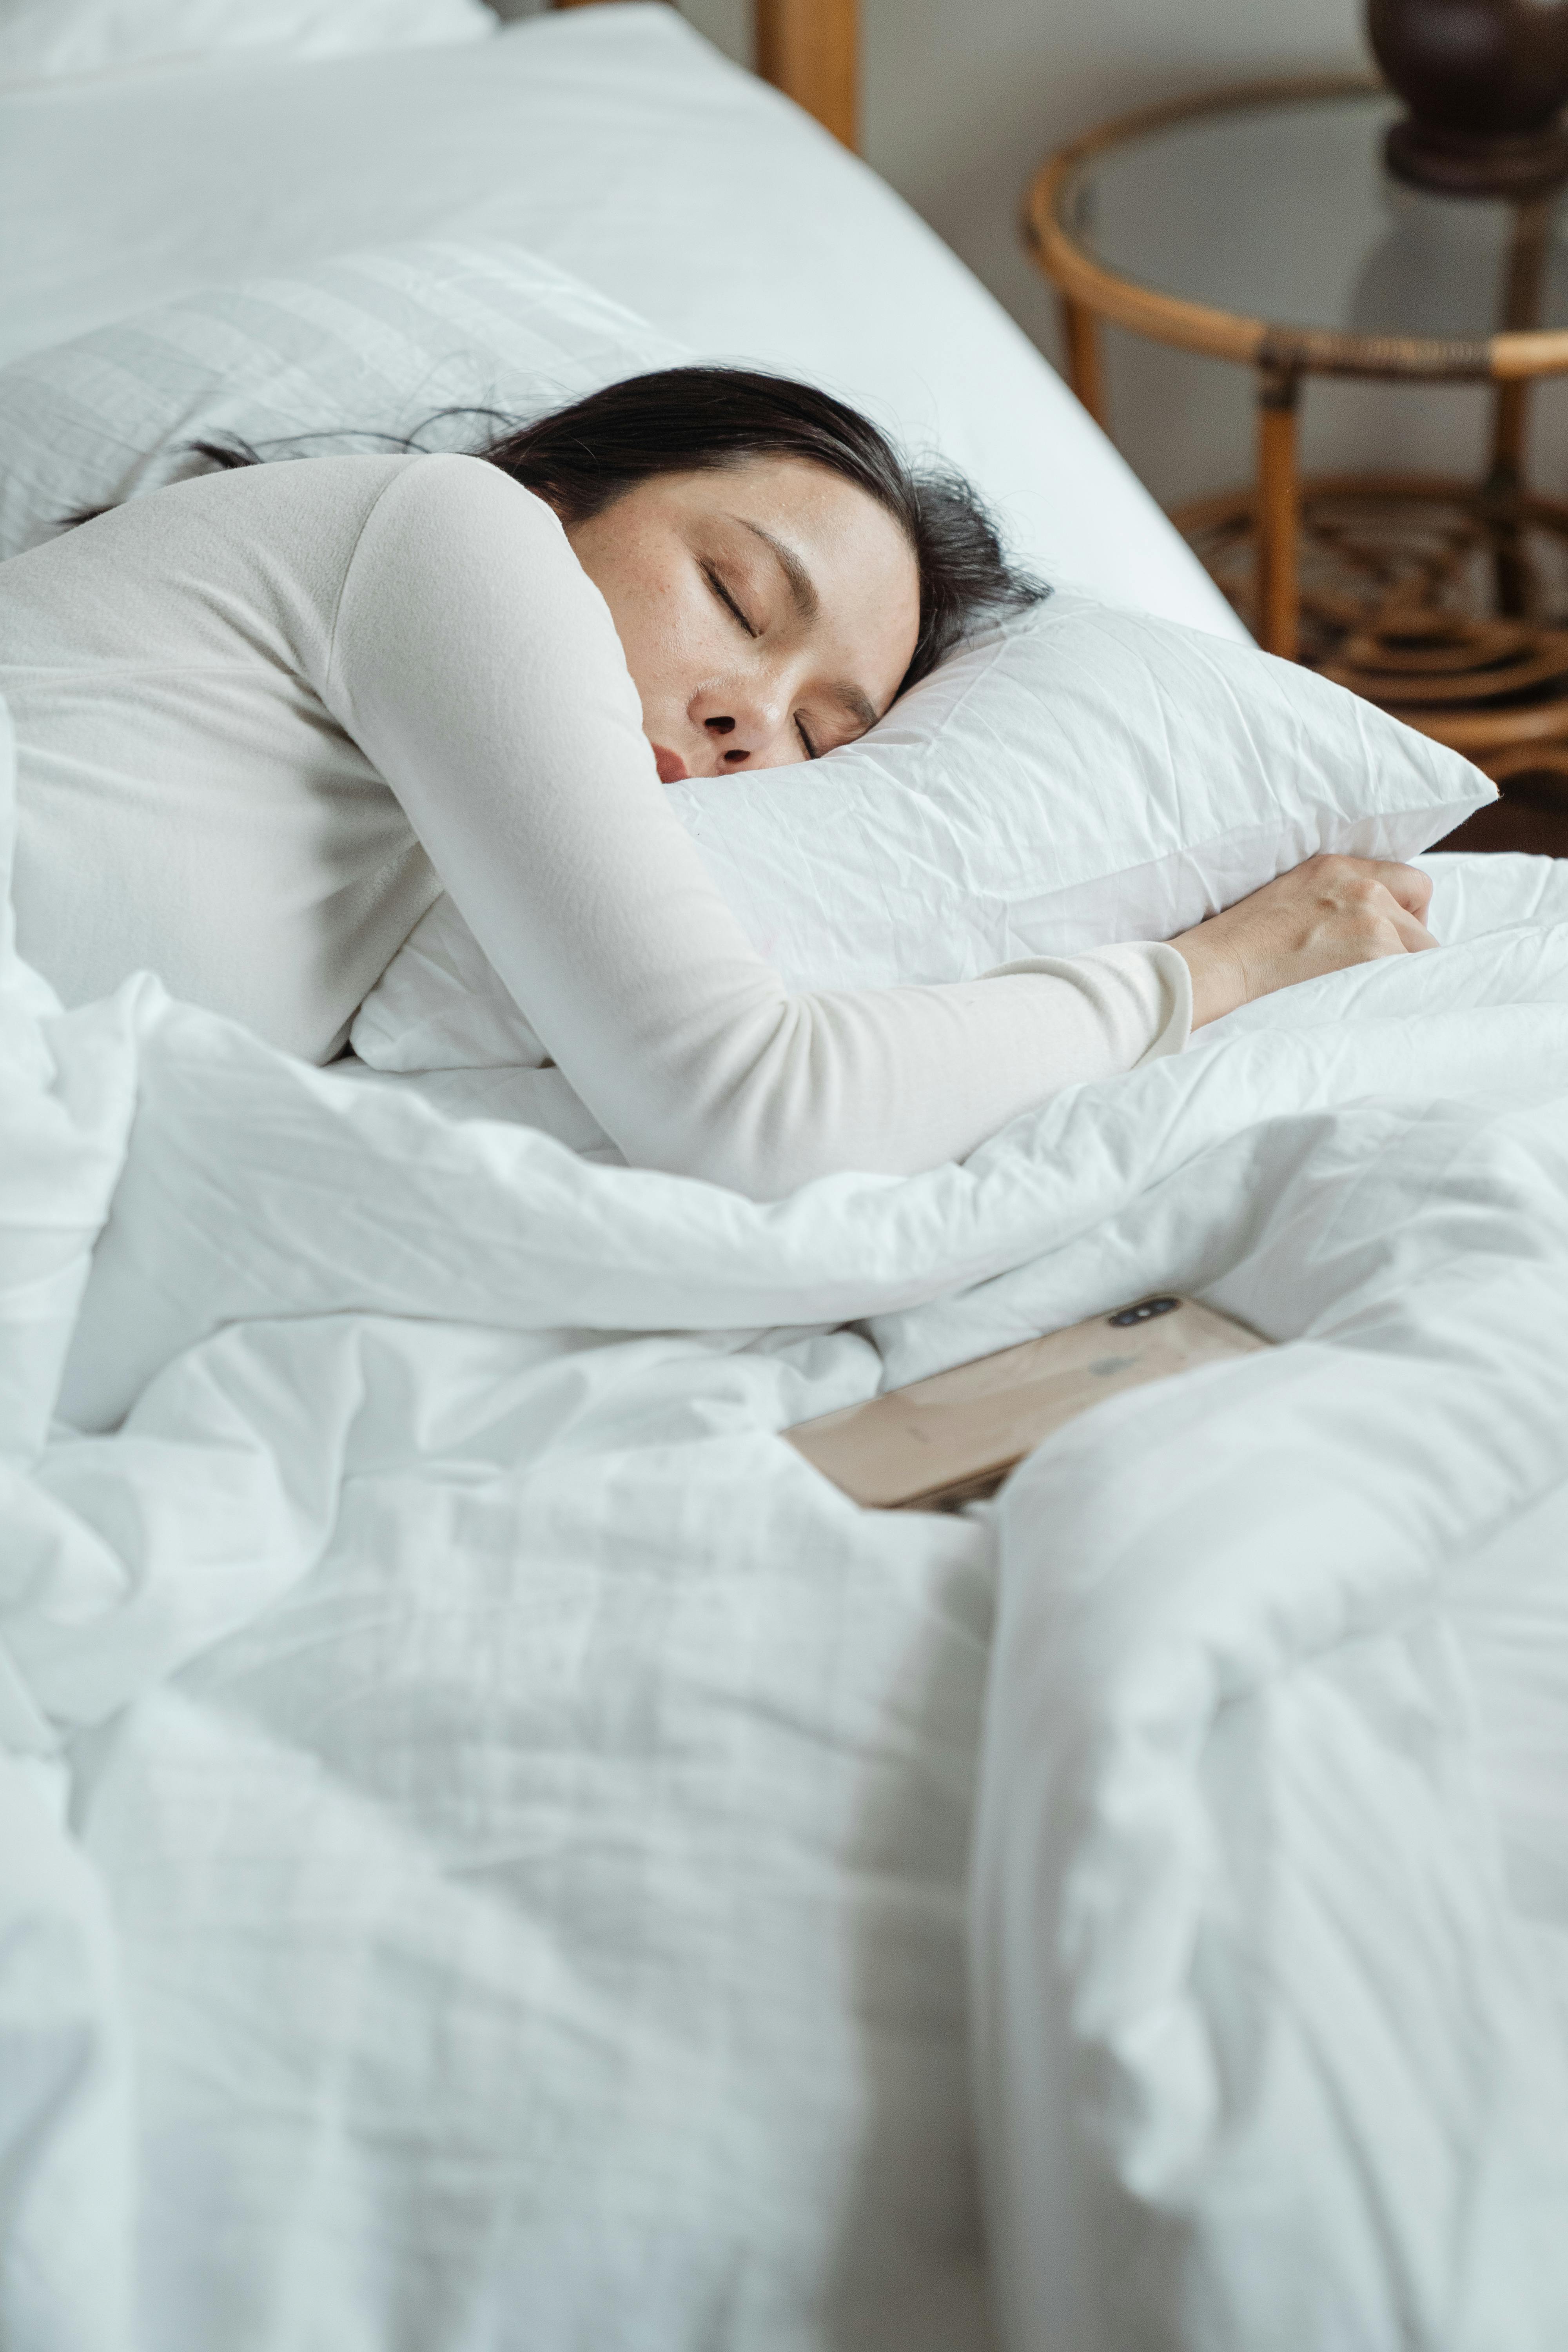 Une femme allongée dans son lit, seule, avec son téléphone sur le côté | Source : Pexels